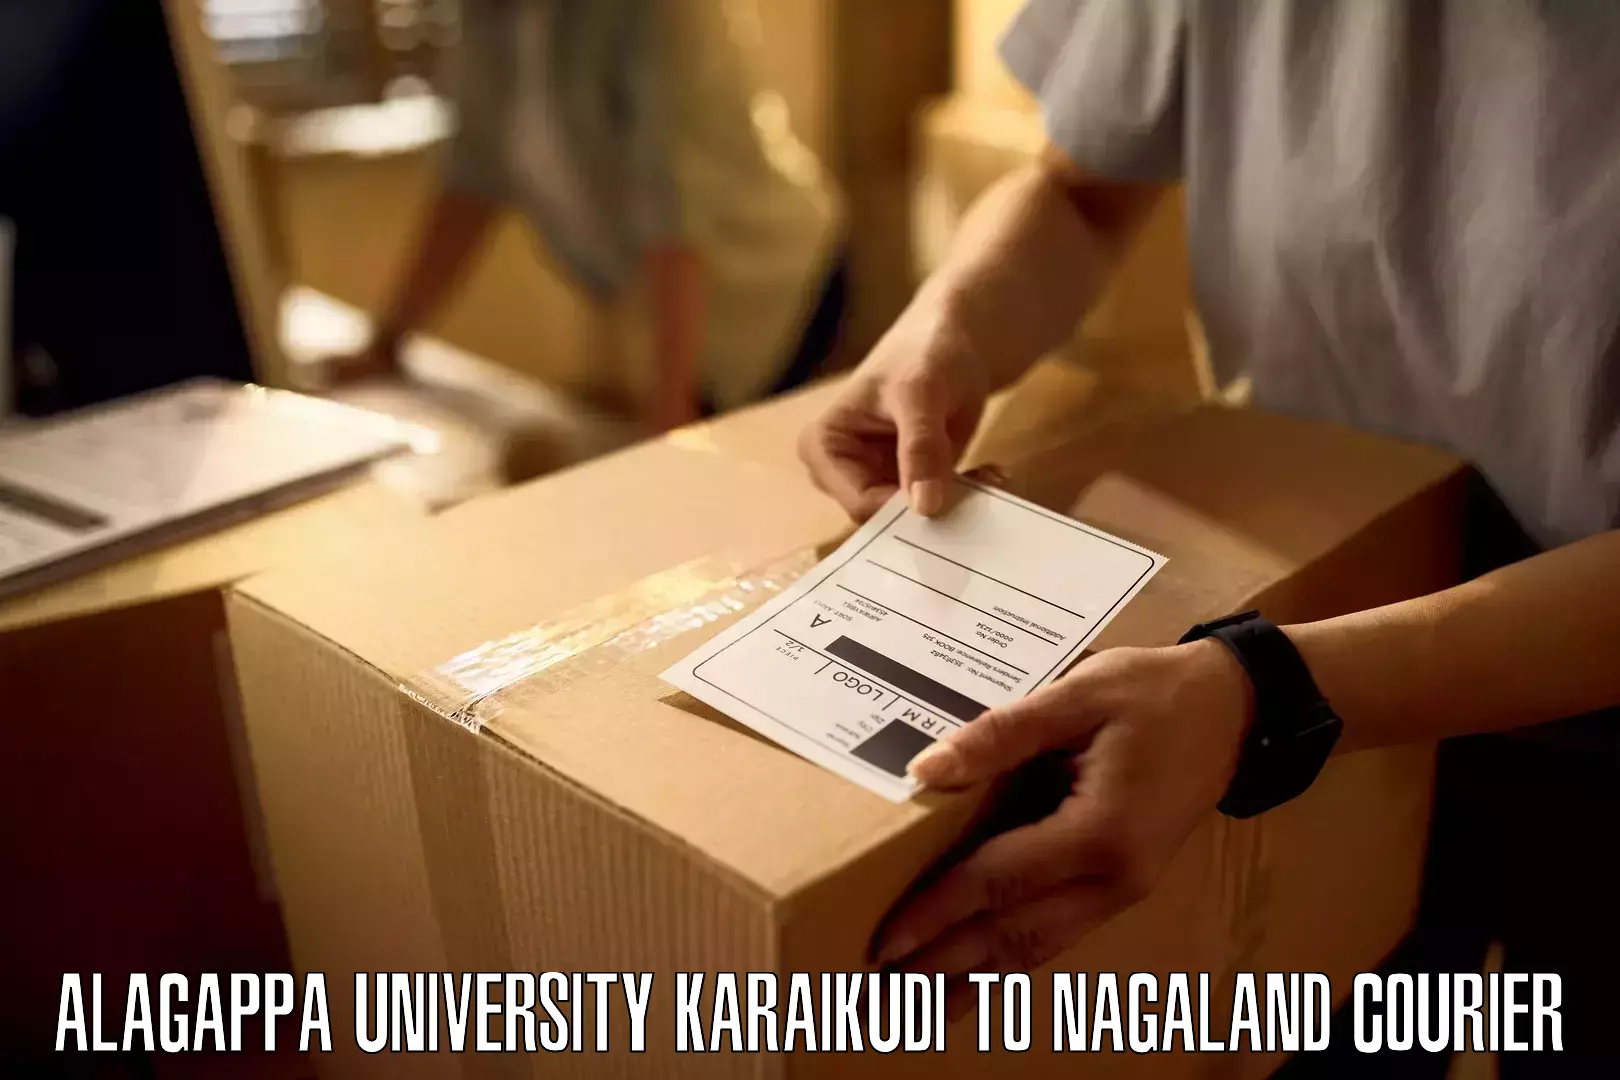 Next-day freight services Alagappa University Karaikudi to Peren